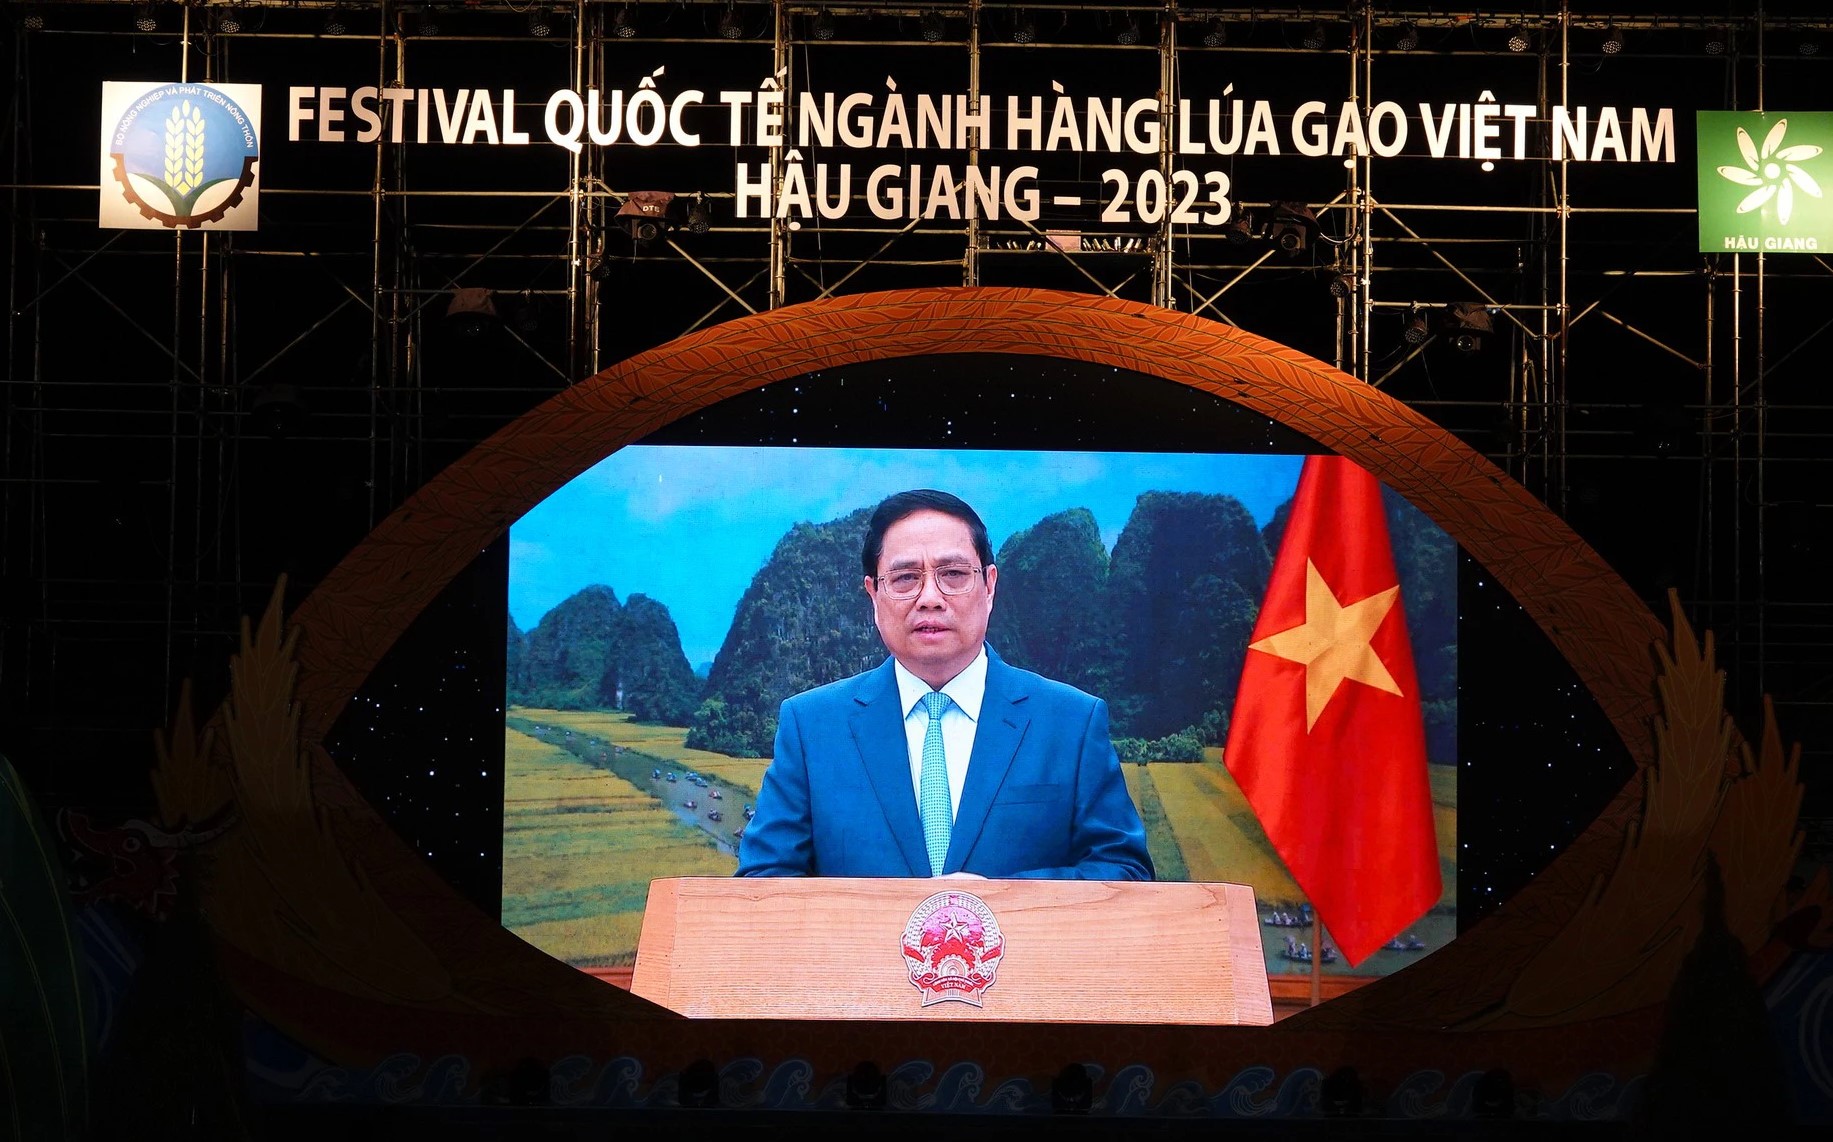 Thủ tướng Phạm Minh Chính gửi thông điệp tới Festival quốc tế ngành hàng lúa gạo Việt Nam-Hậu Giang 2023 - Ảnh: VGP